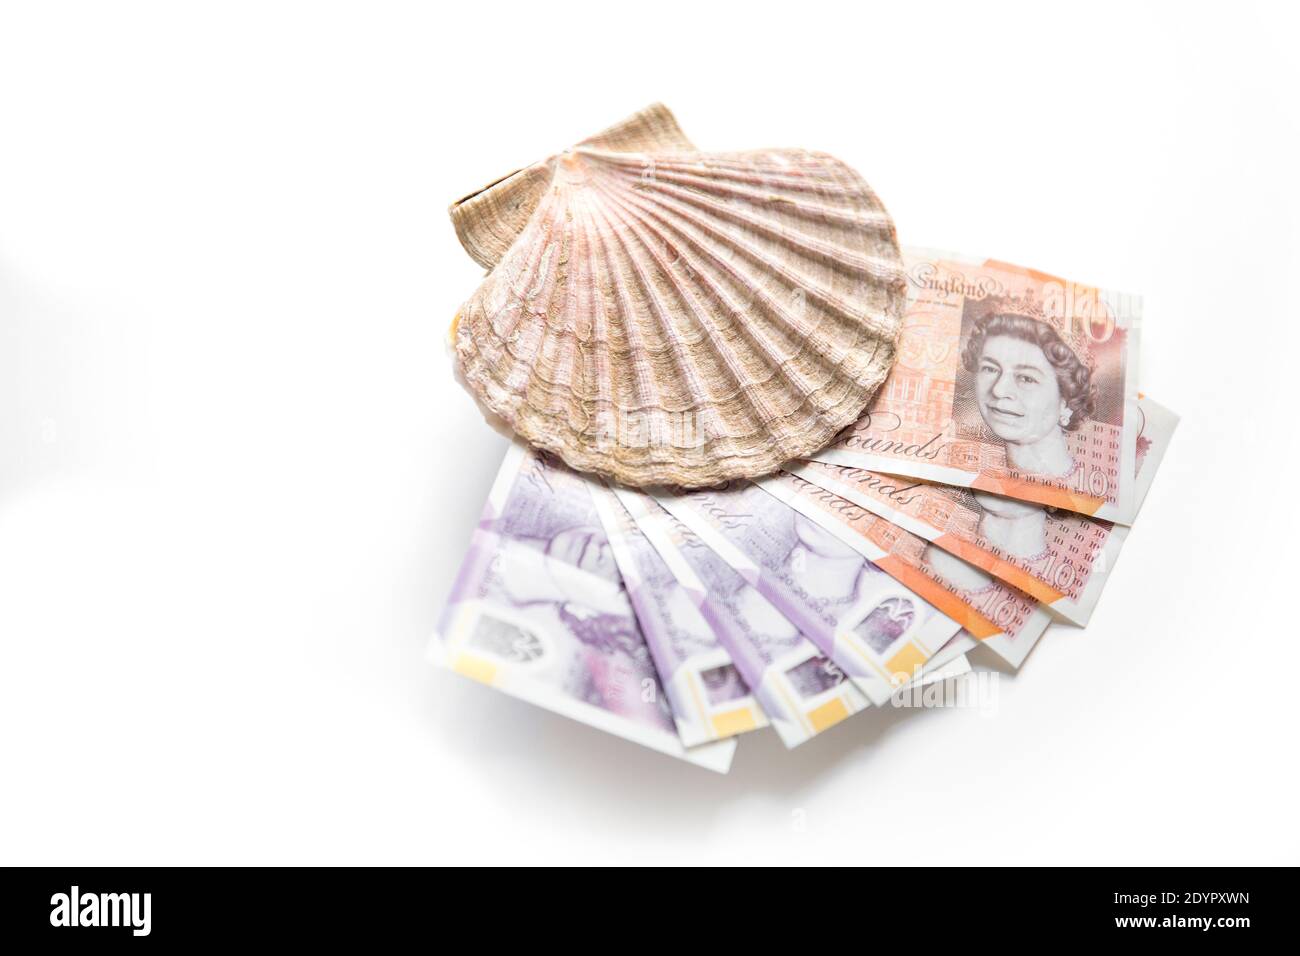 Eine Königskallopschale, P. maximus mit zehn und zwanzig Pfund Noten. Konzept Brexit-Bild für den Wert der britischen Muschel-/Fischindustrie. England GB Stockfoto